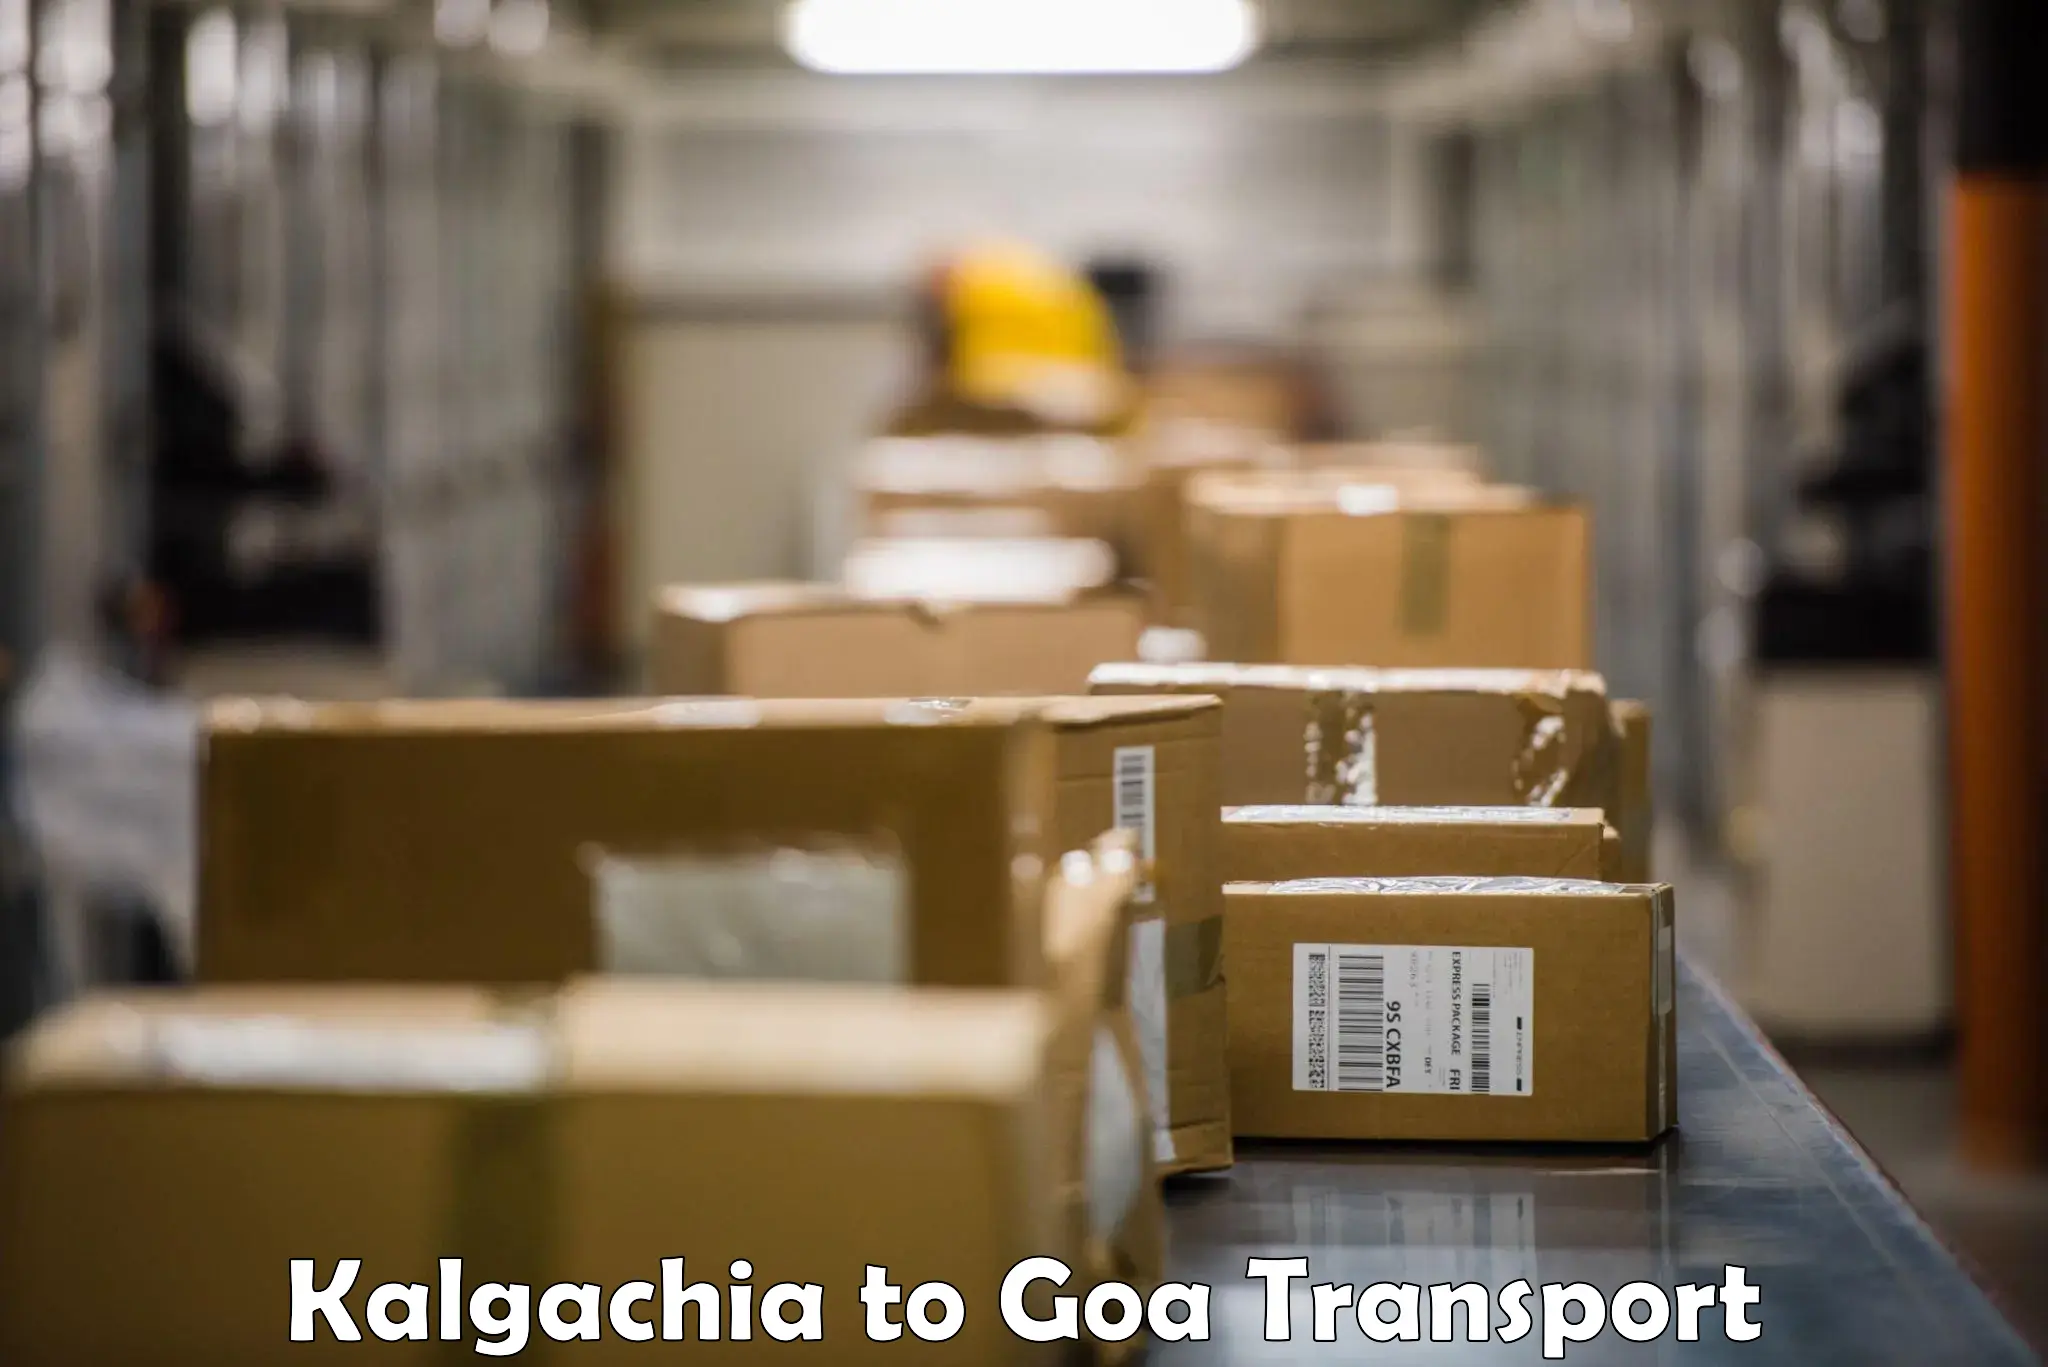 Shipping services Kalgachia to Vasco da Gama